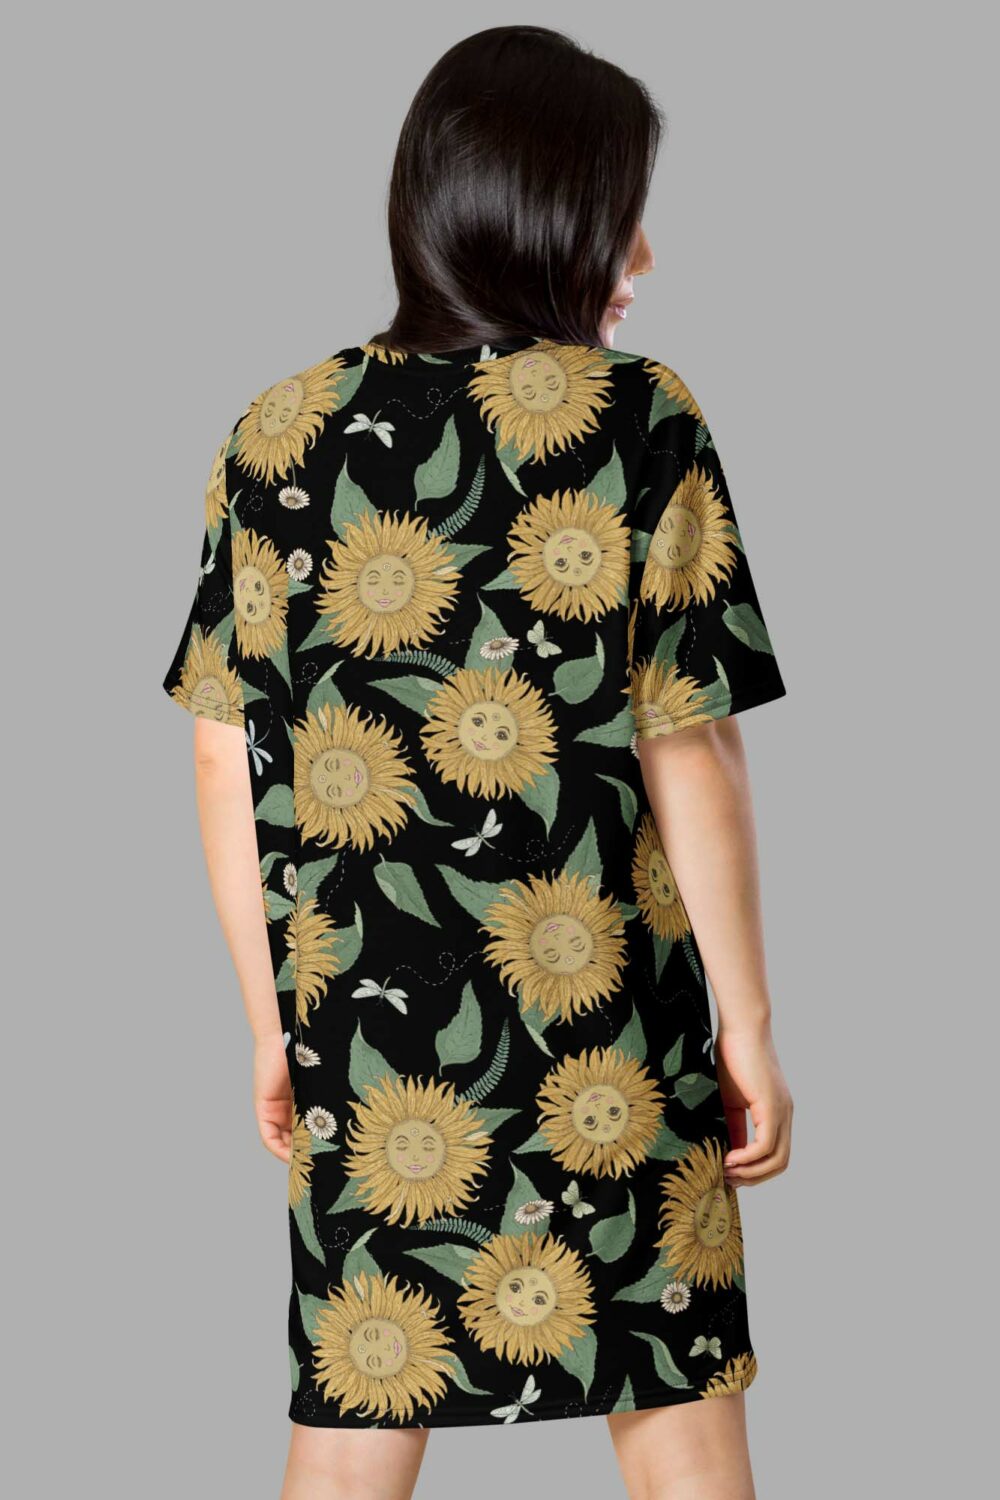 cosmic drifters sunflower daze print t shirt dress back